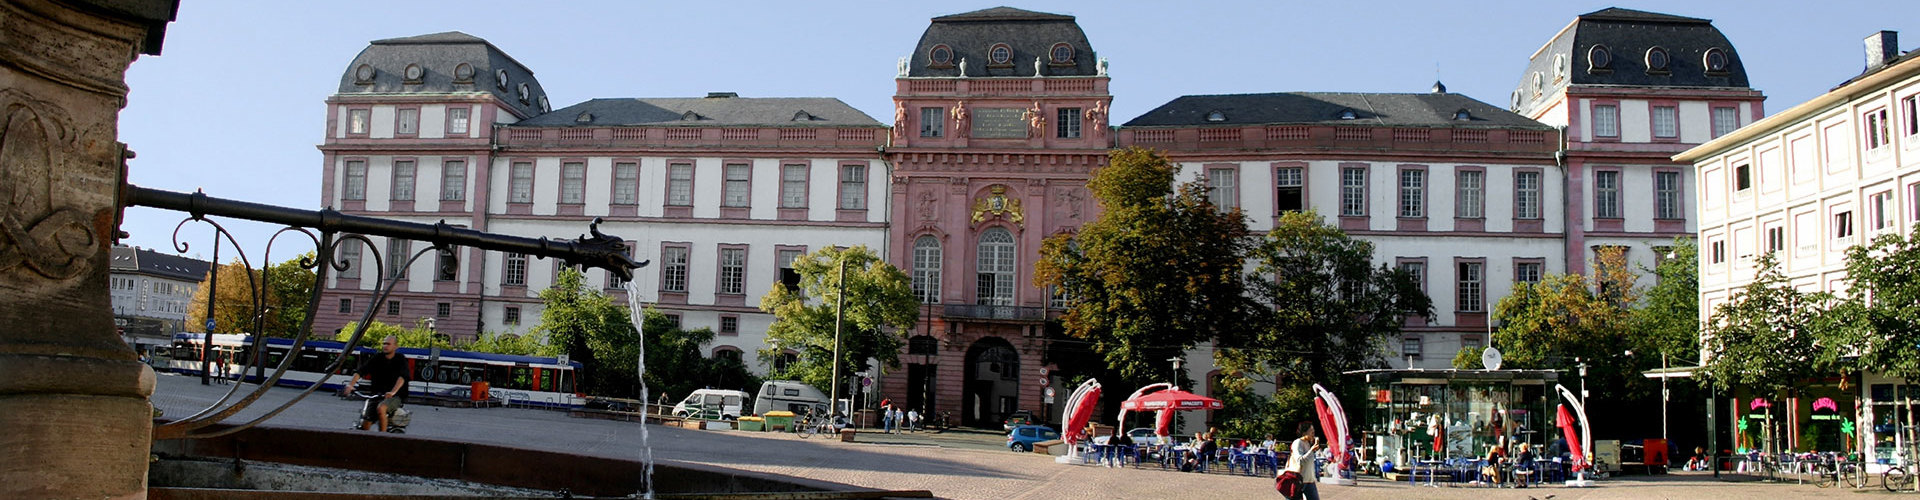 Marktplatzbrunnen und Schloss